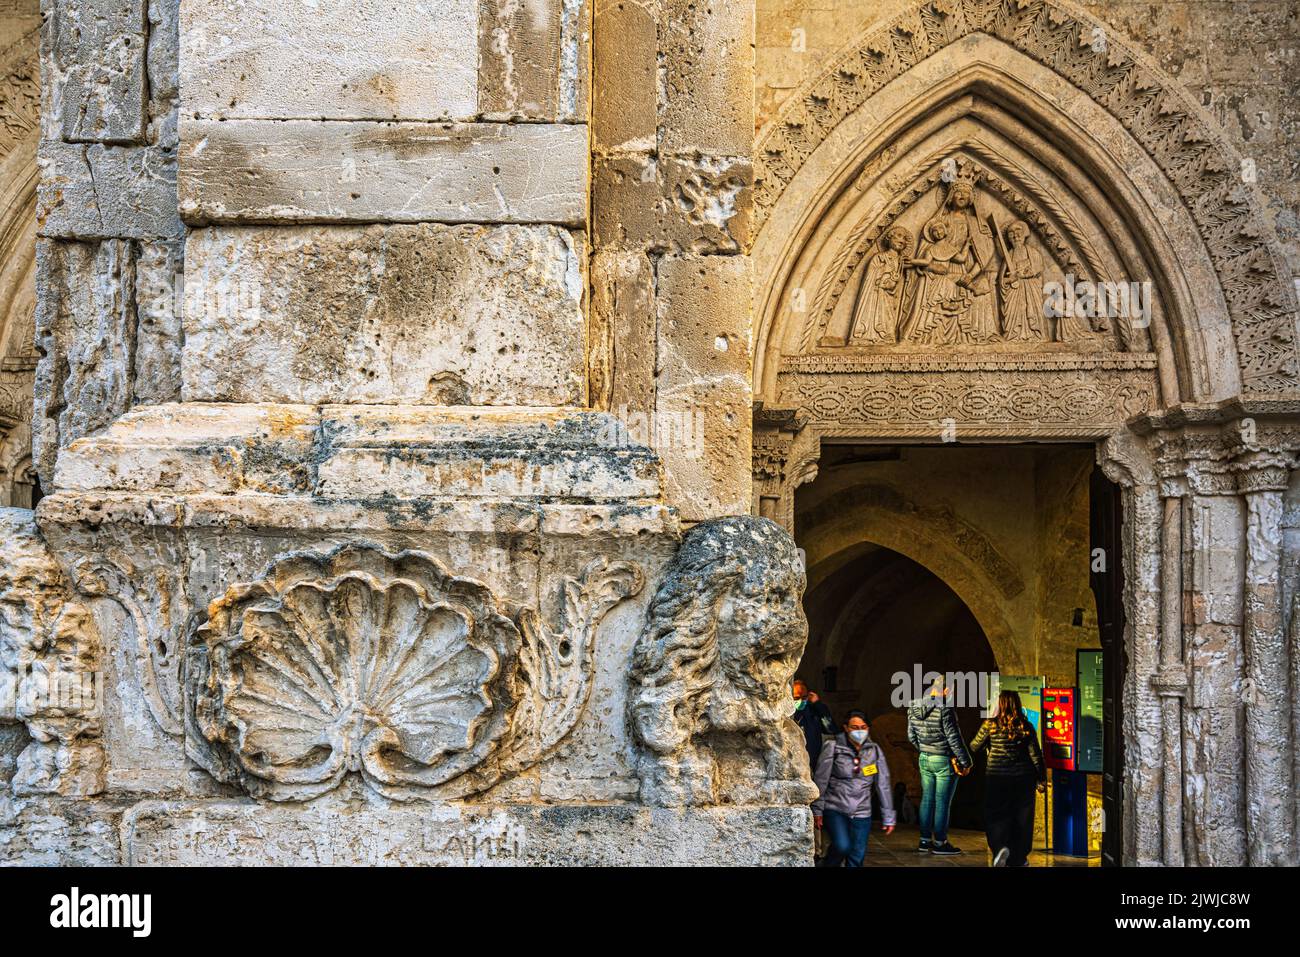 Dettagli architettonici dell'ingresso al santuario di San Michele Arcangelo a Monte Sant'Angelo. Provincia di Foggia, Puglia, Italia, Europa Foto Stock